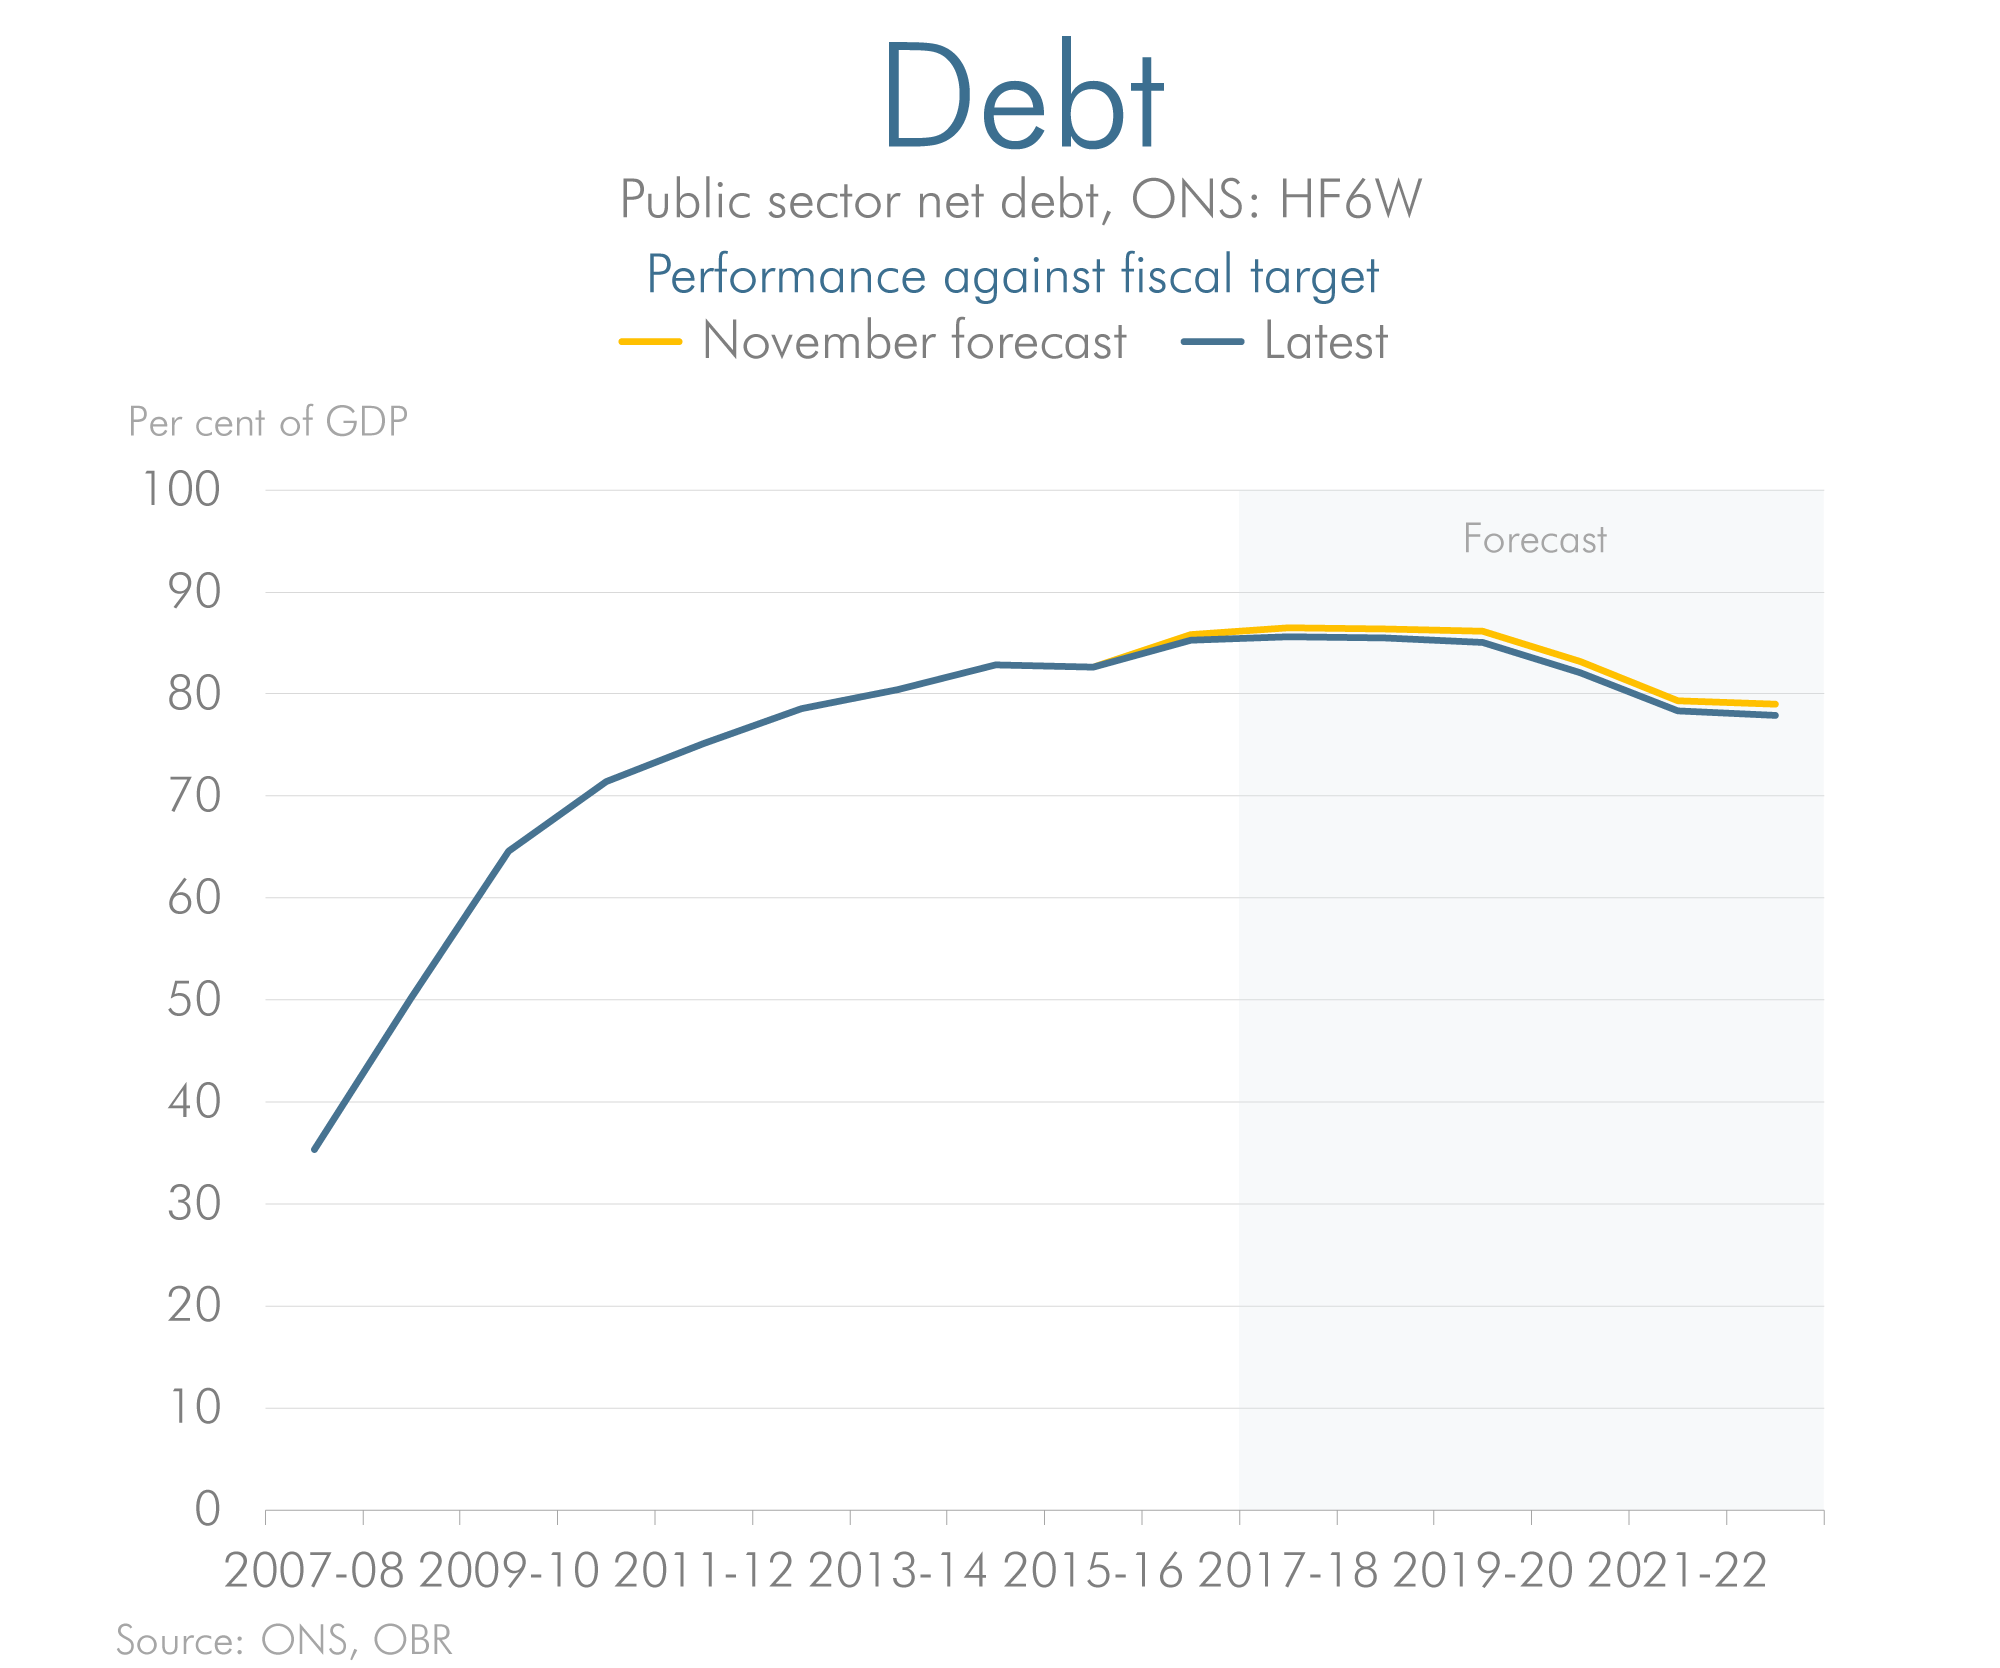 Latest forecast versus previous forecast for debt